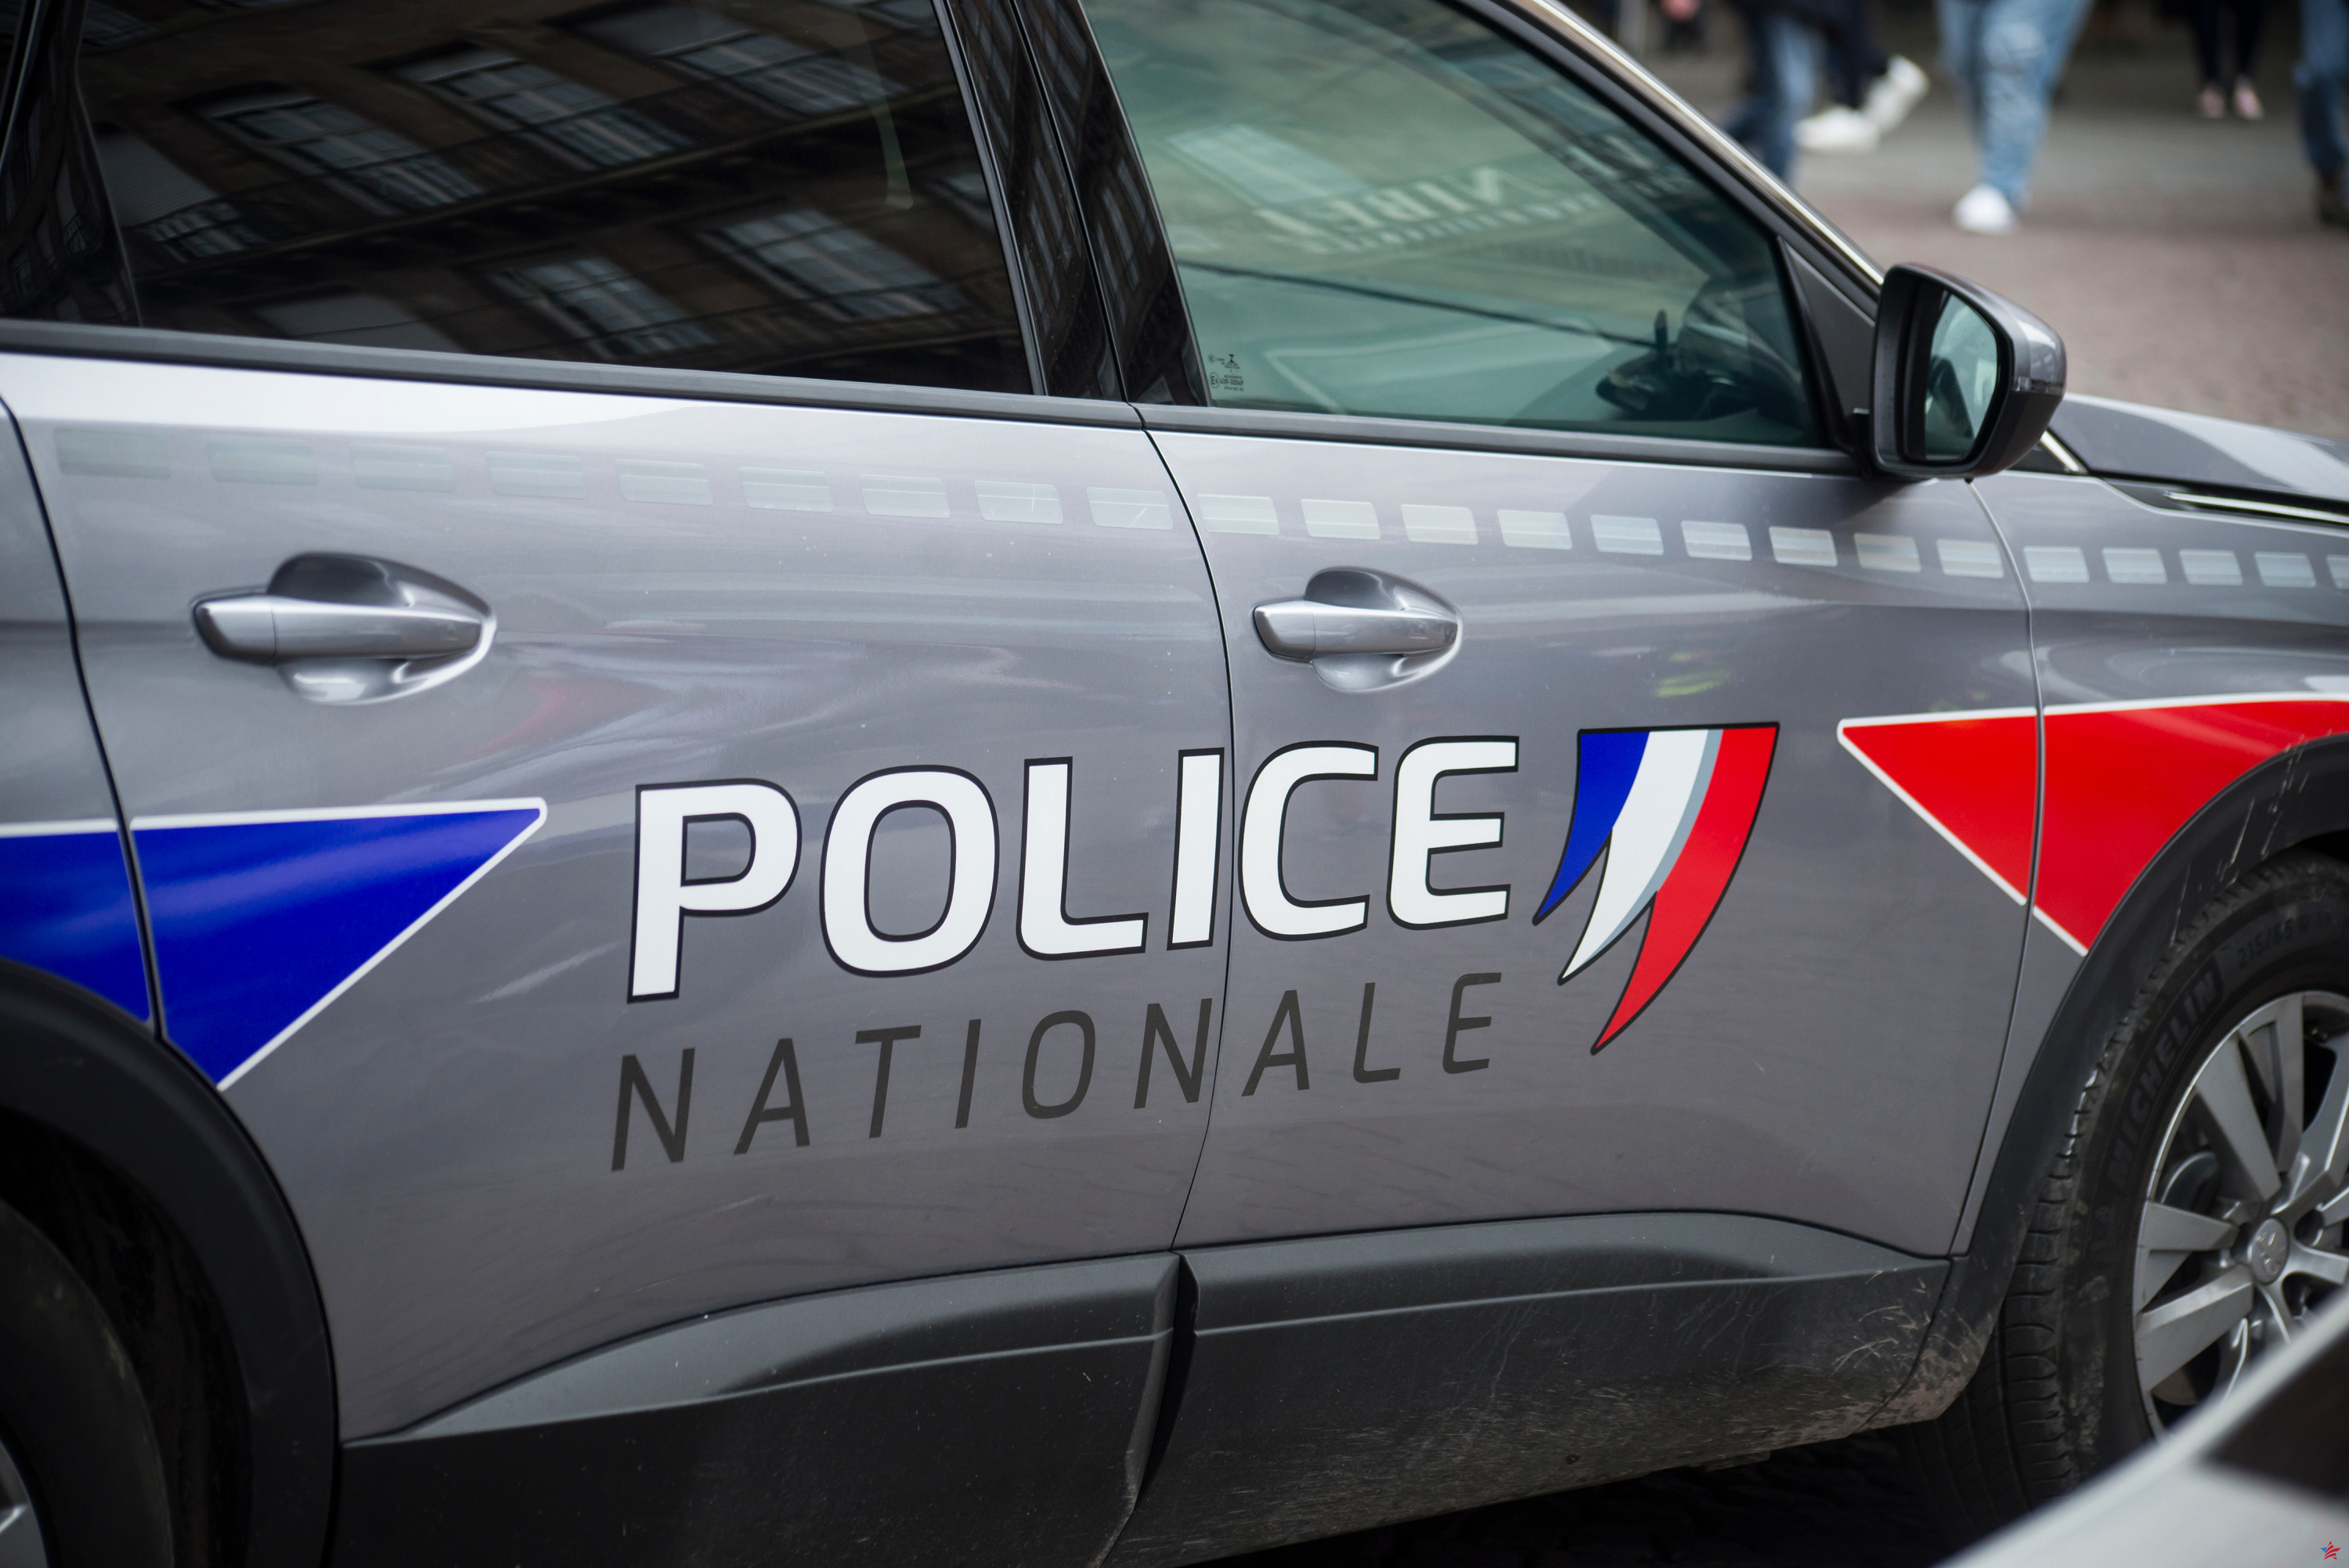 Hérault: una niña de 14 años brutalmente golpeada frente a su escuela, un menor arrestado